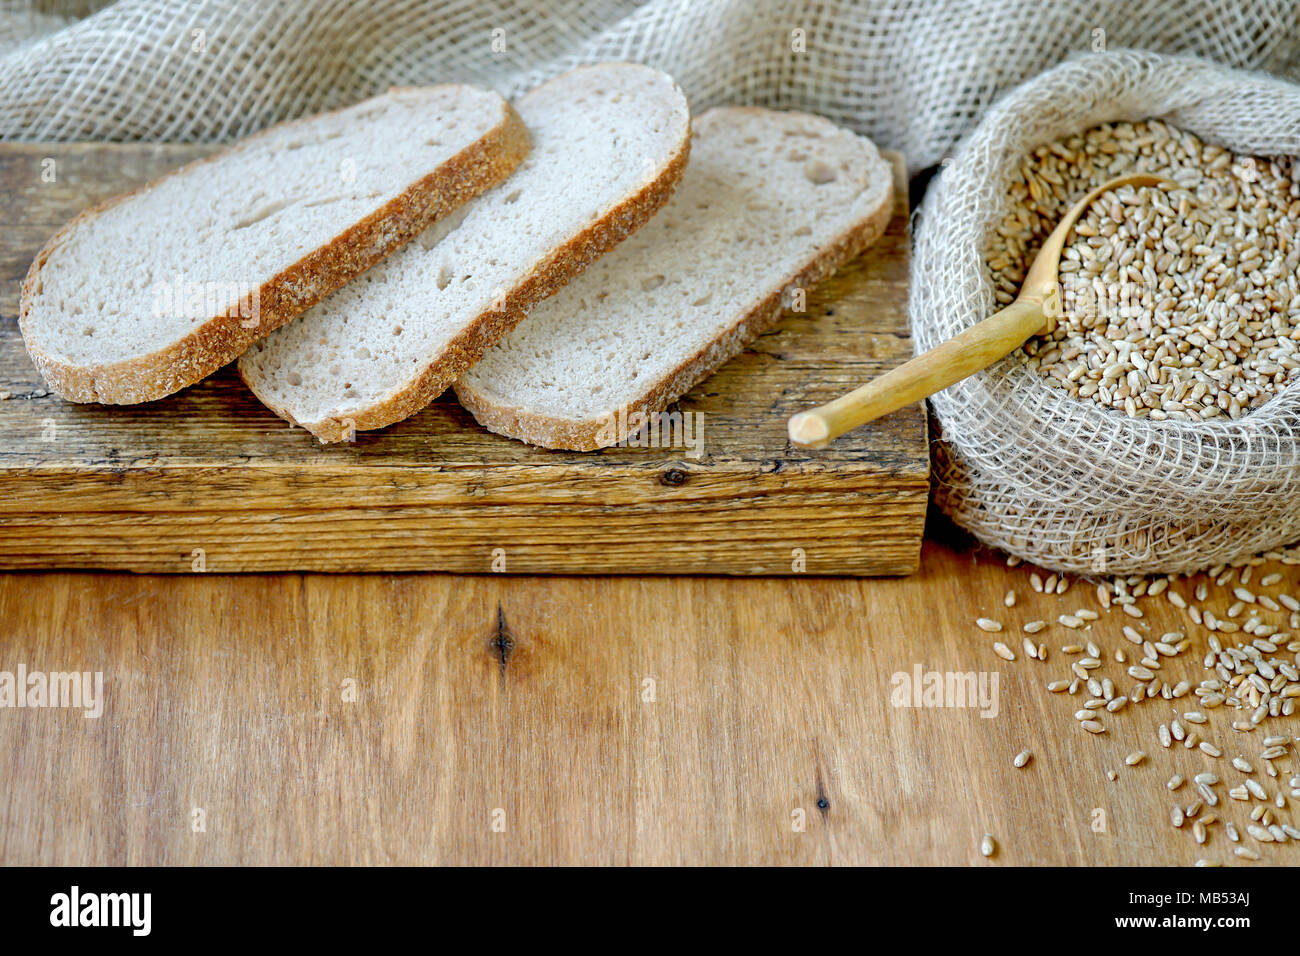 Sur une planche en bois se trouvent les tranches de pain. A proximité se trouve un sac de blé. La récolte de céréales d'automne. Banque D'Images